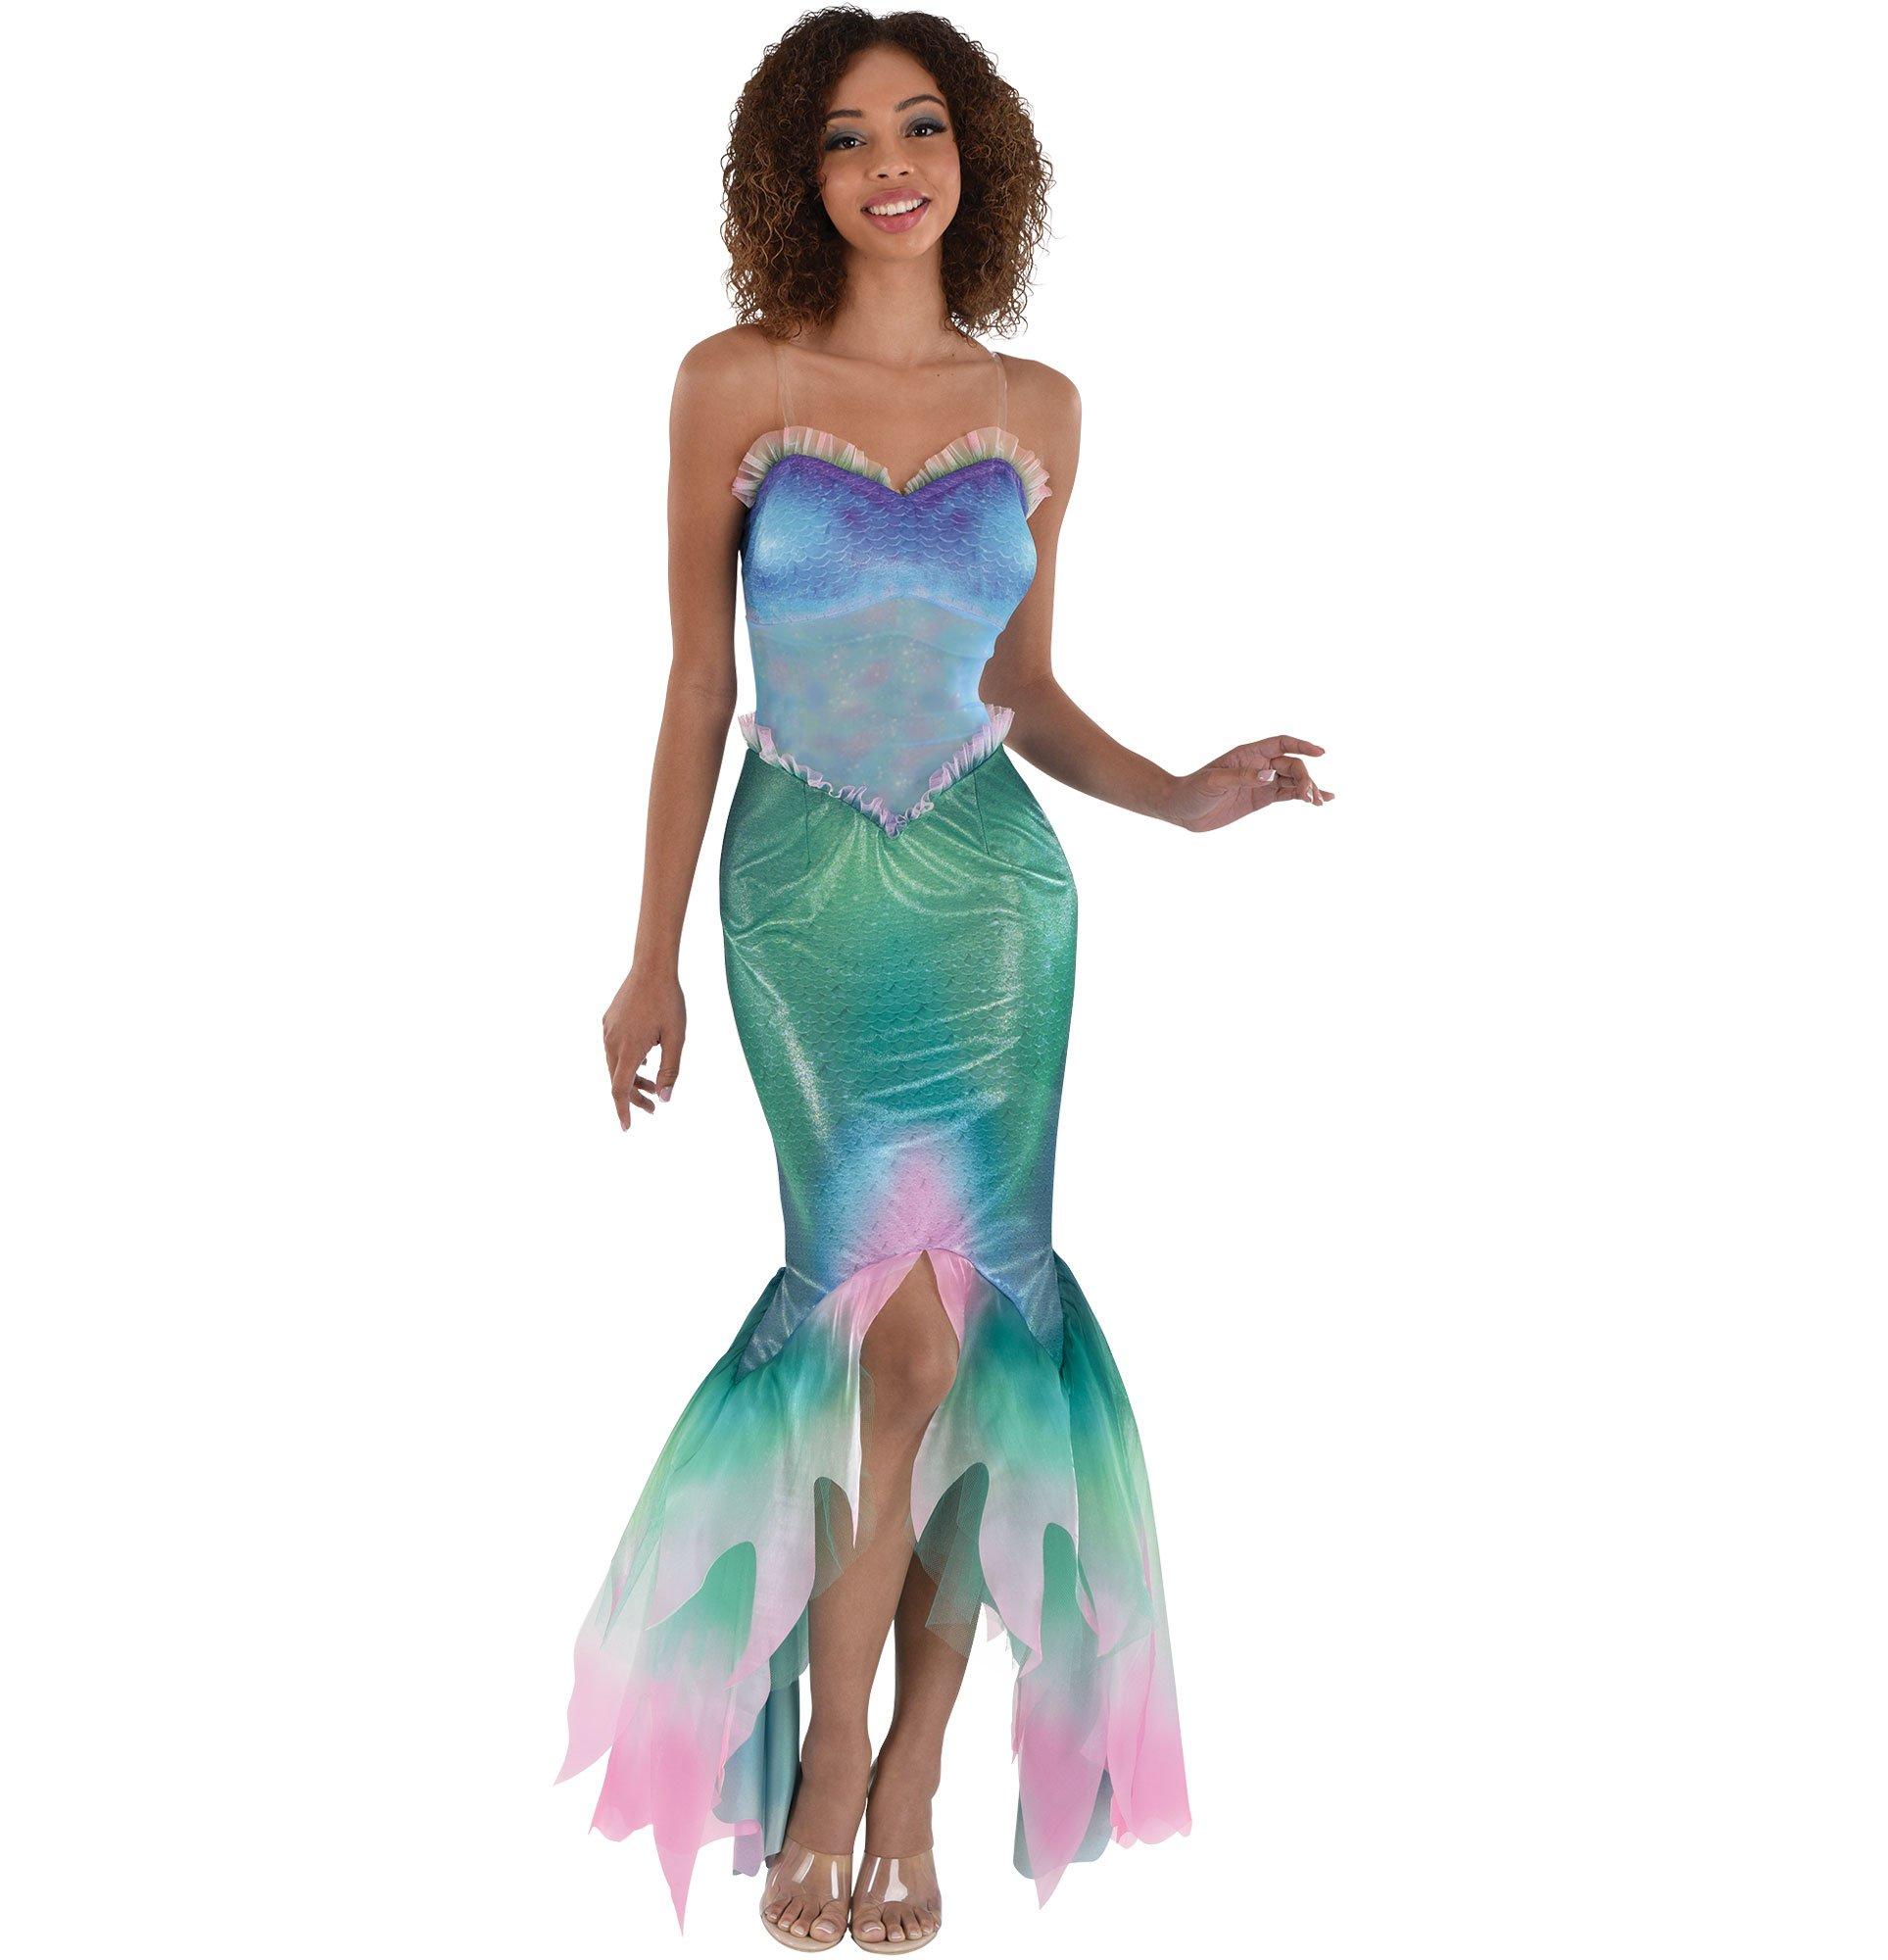 little mermaid inspired dress